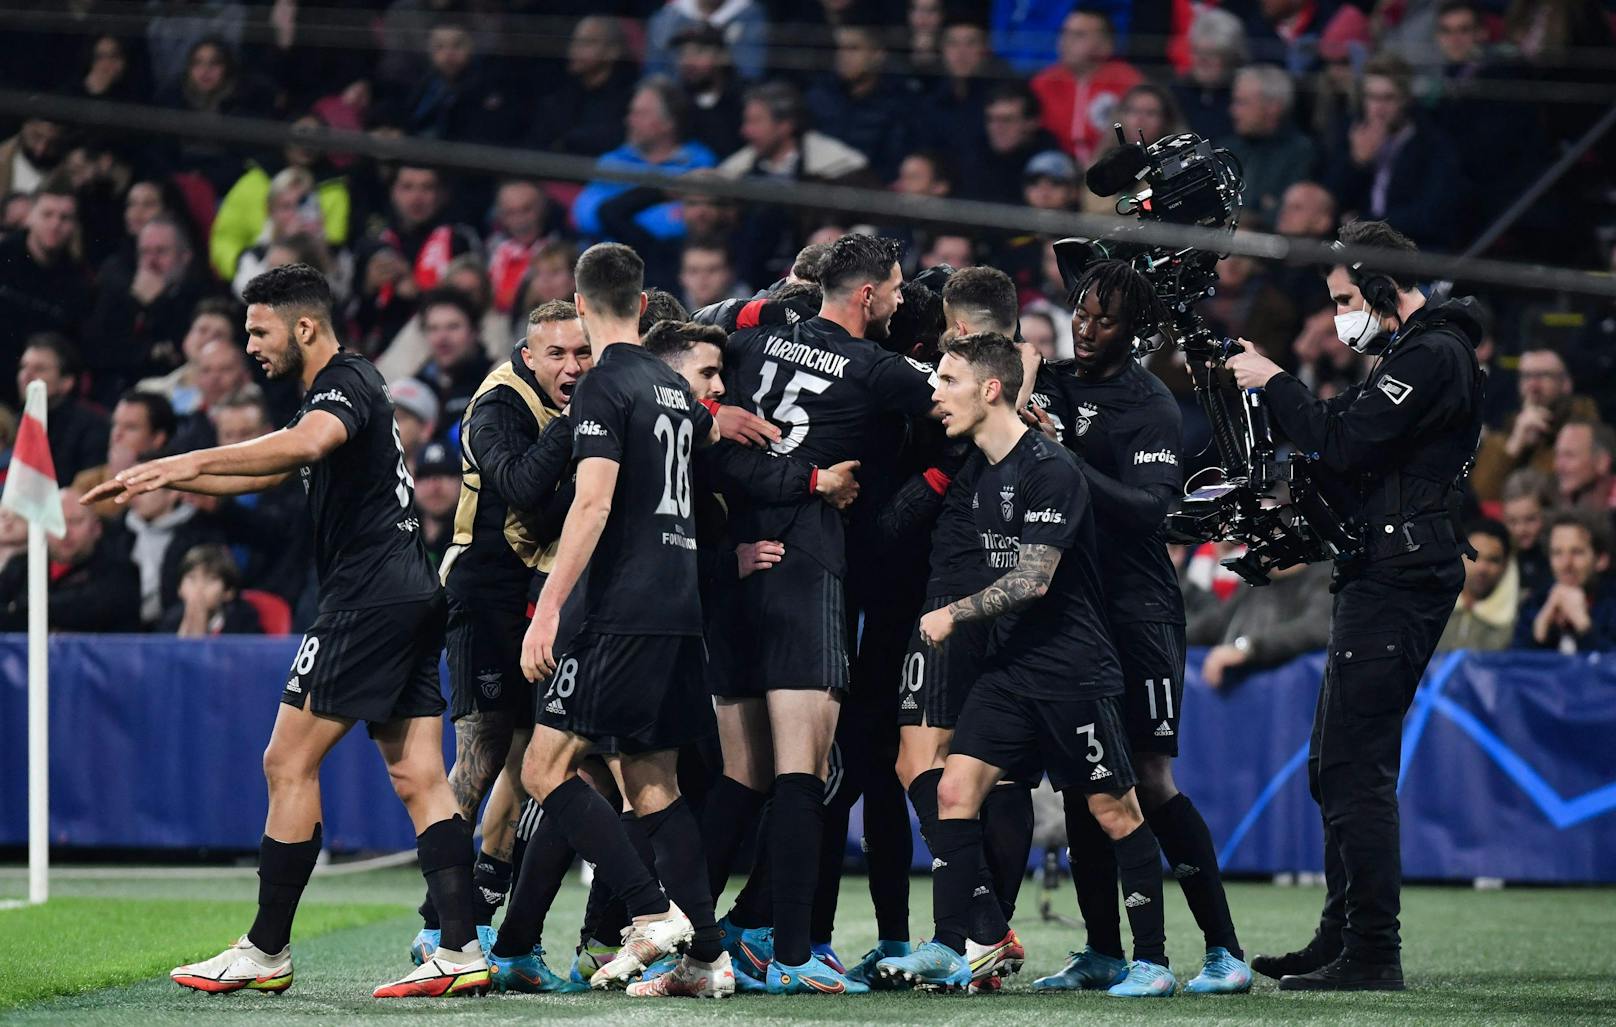 Keeper verfliegt sich – Benfica eliminiert Ajax